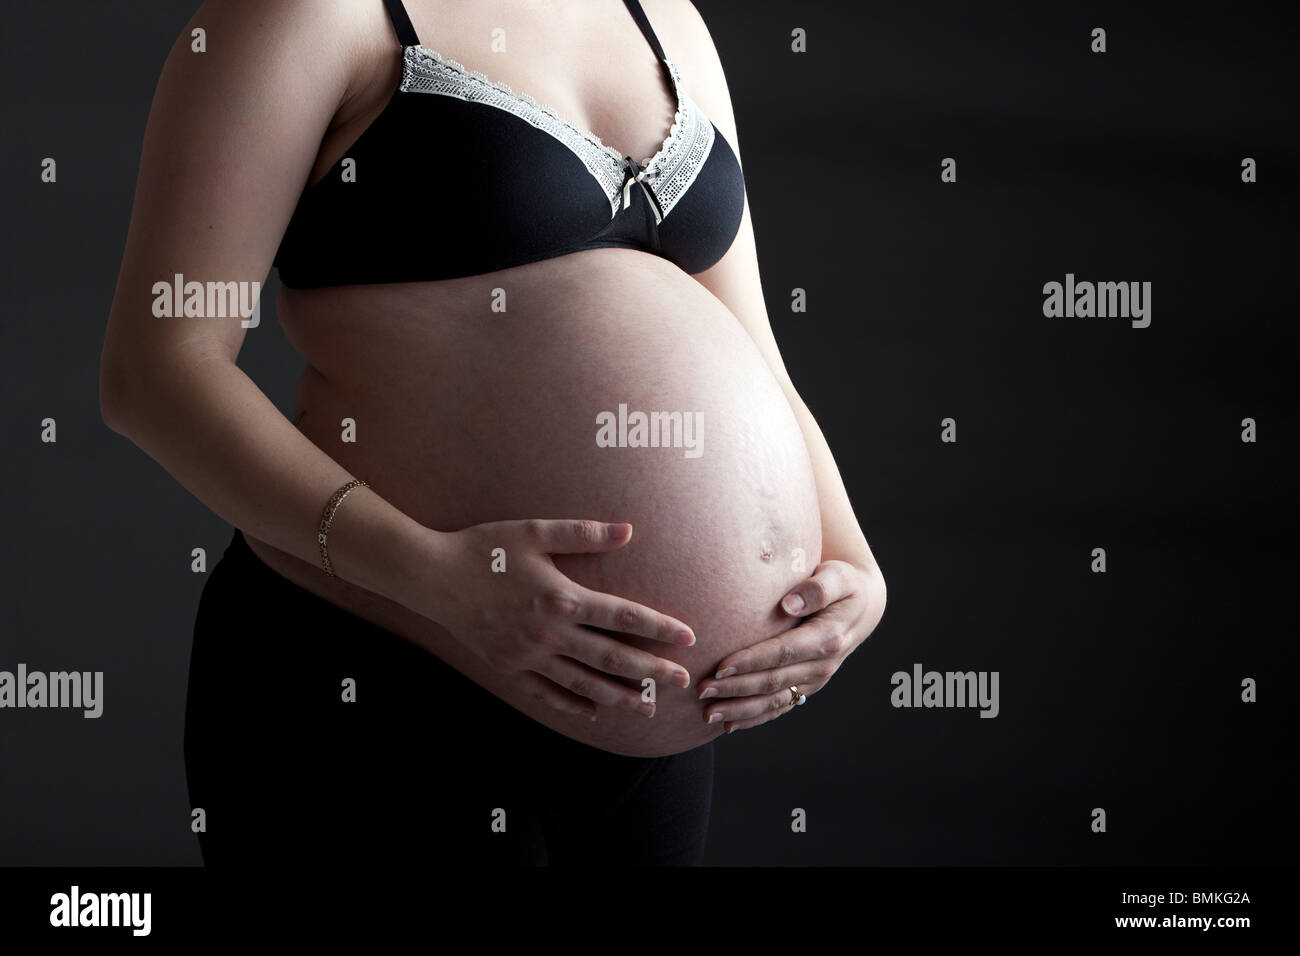 Schöner Schuss von einem stark schwangere Frau Schröpfen ihr Bauch Stockfoto